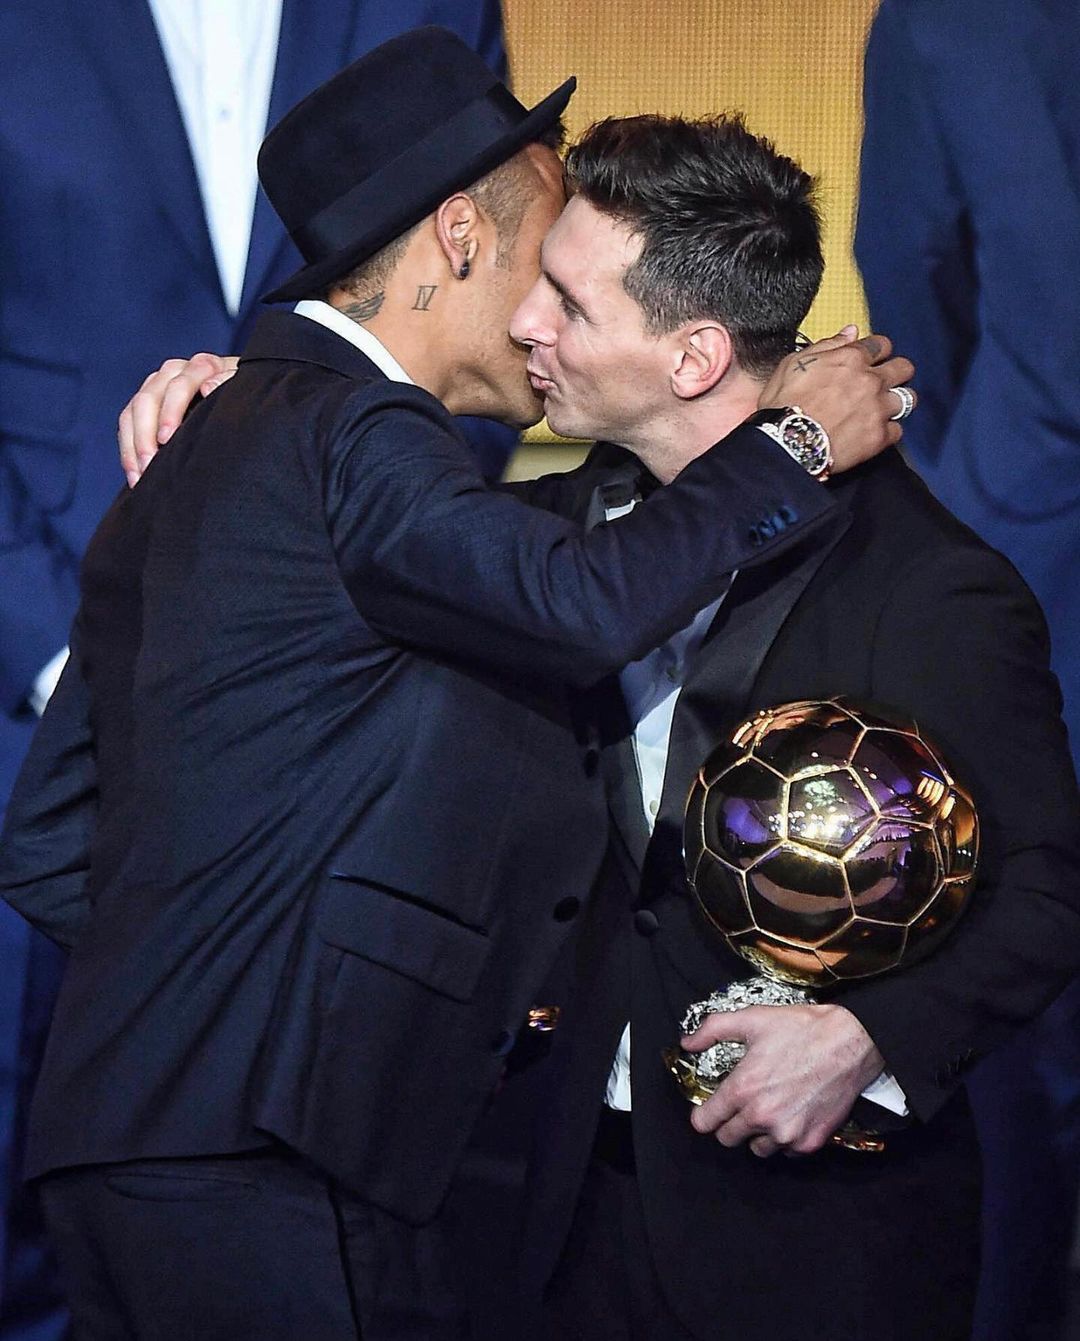 post van neymarjr waarop te zien is dat hij Lionel Messi een kus geeft om het te feliciteren met zijn ballon d'or